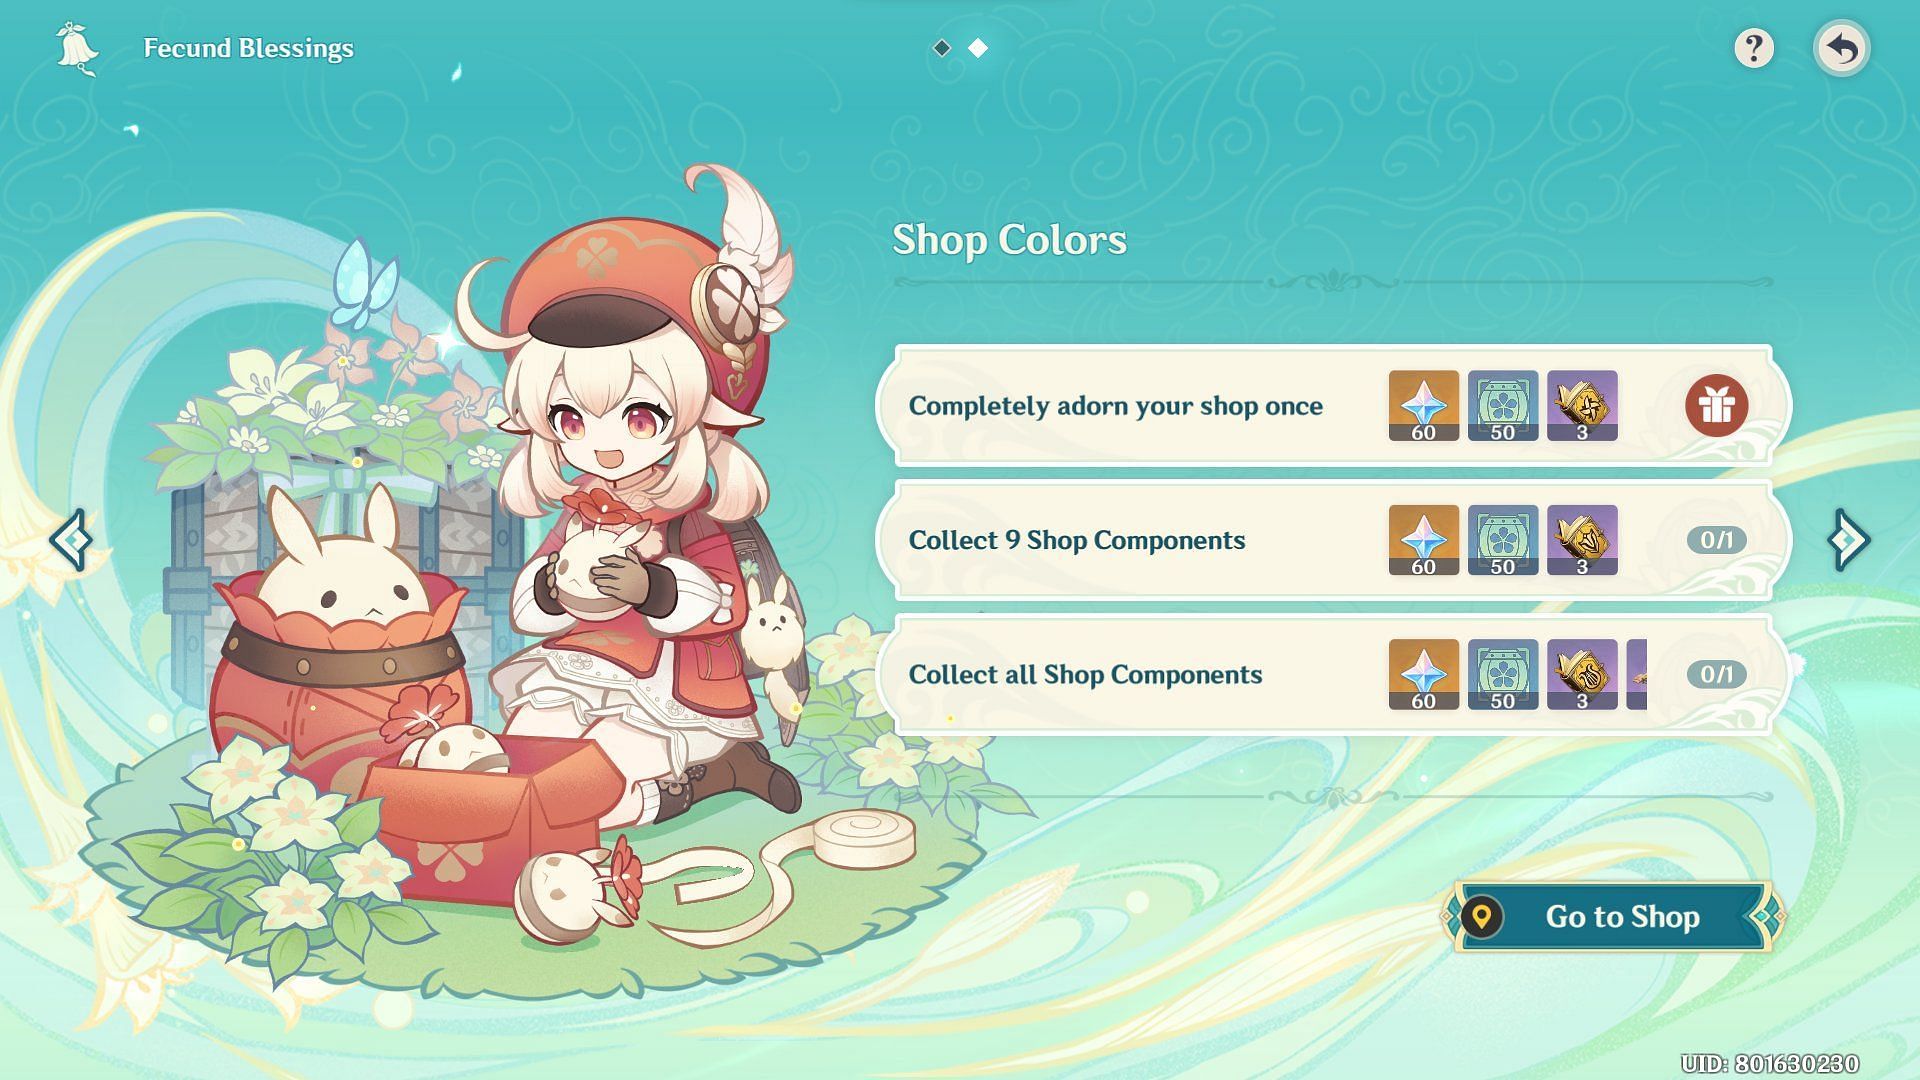 Shop Colors event page preview (Image via Genshin Impact)